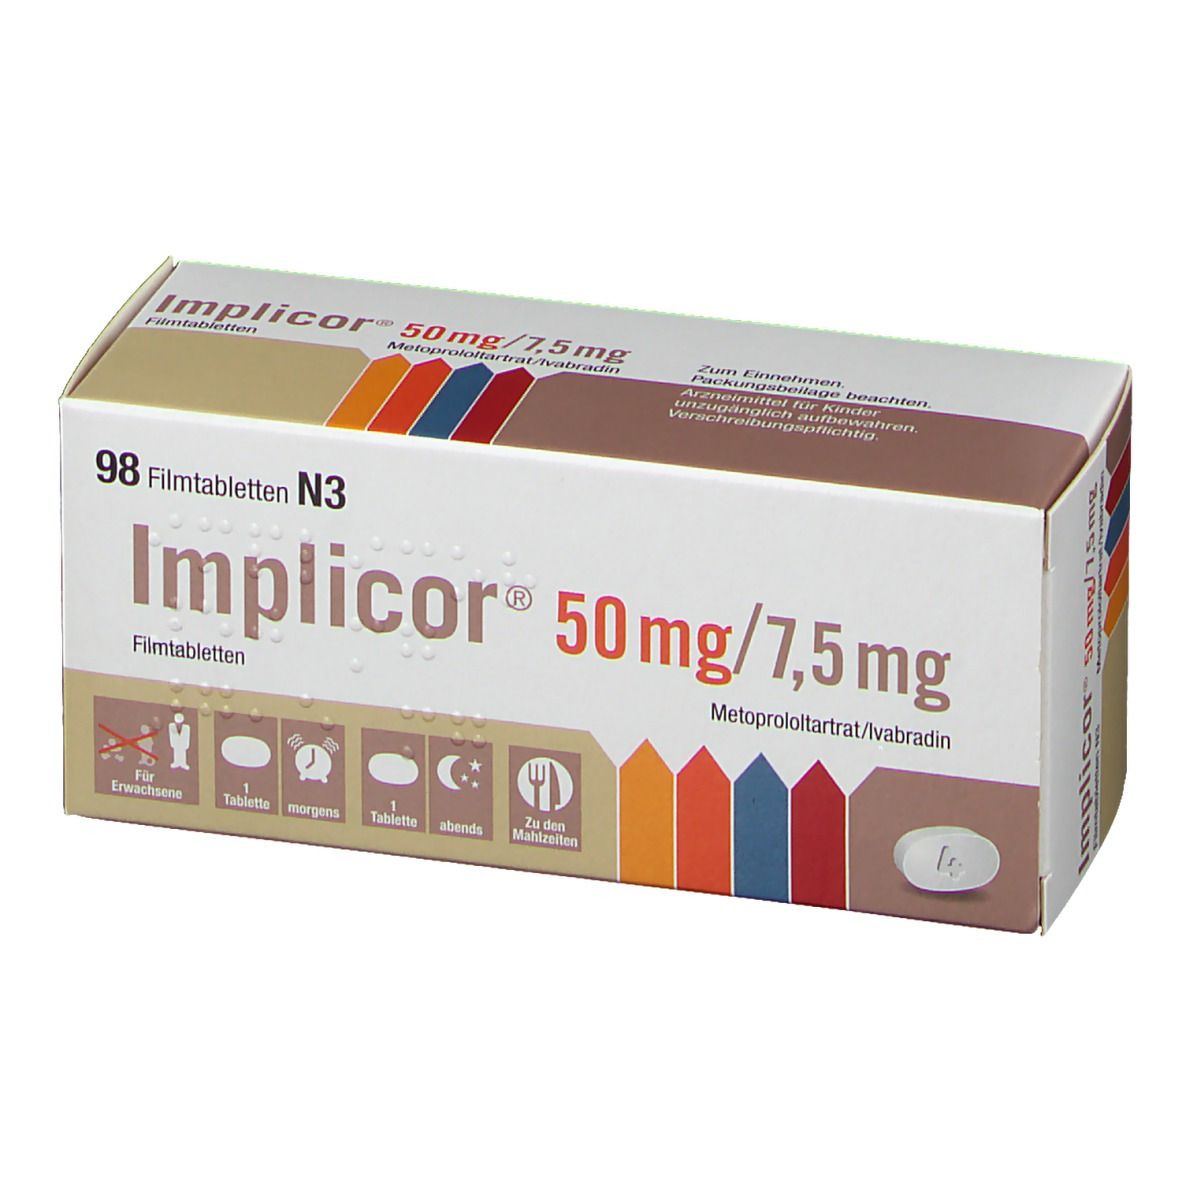 Implicor® 50 mg/7,5 mg